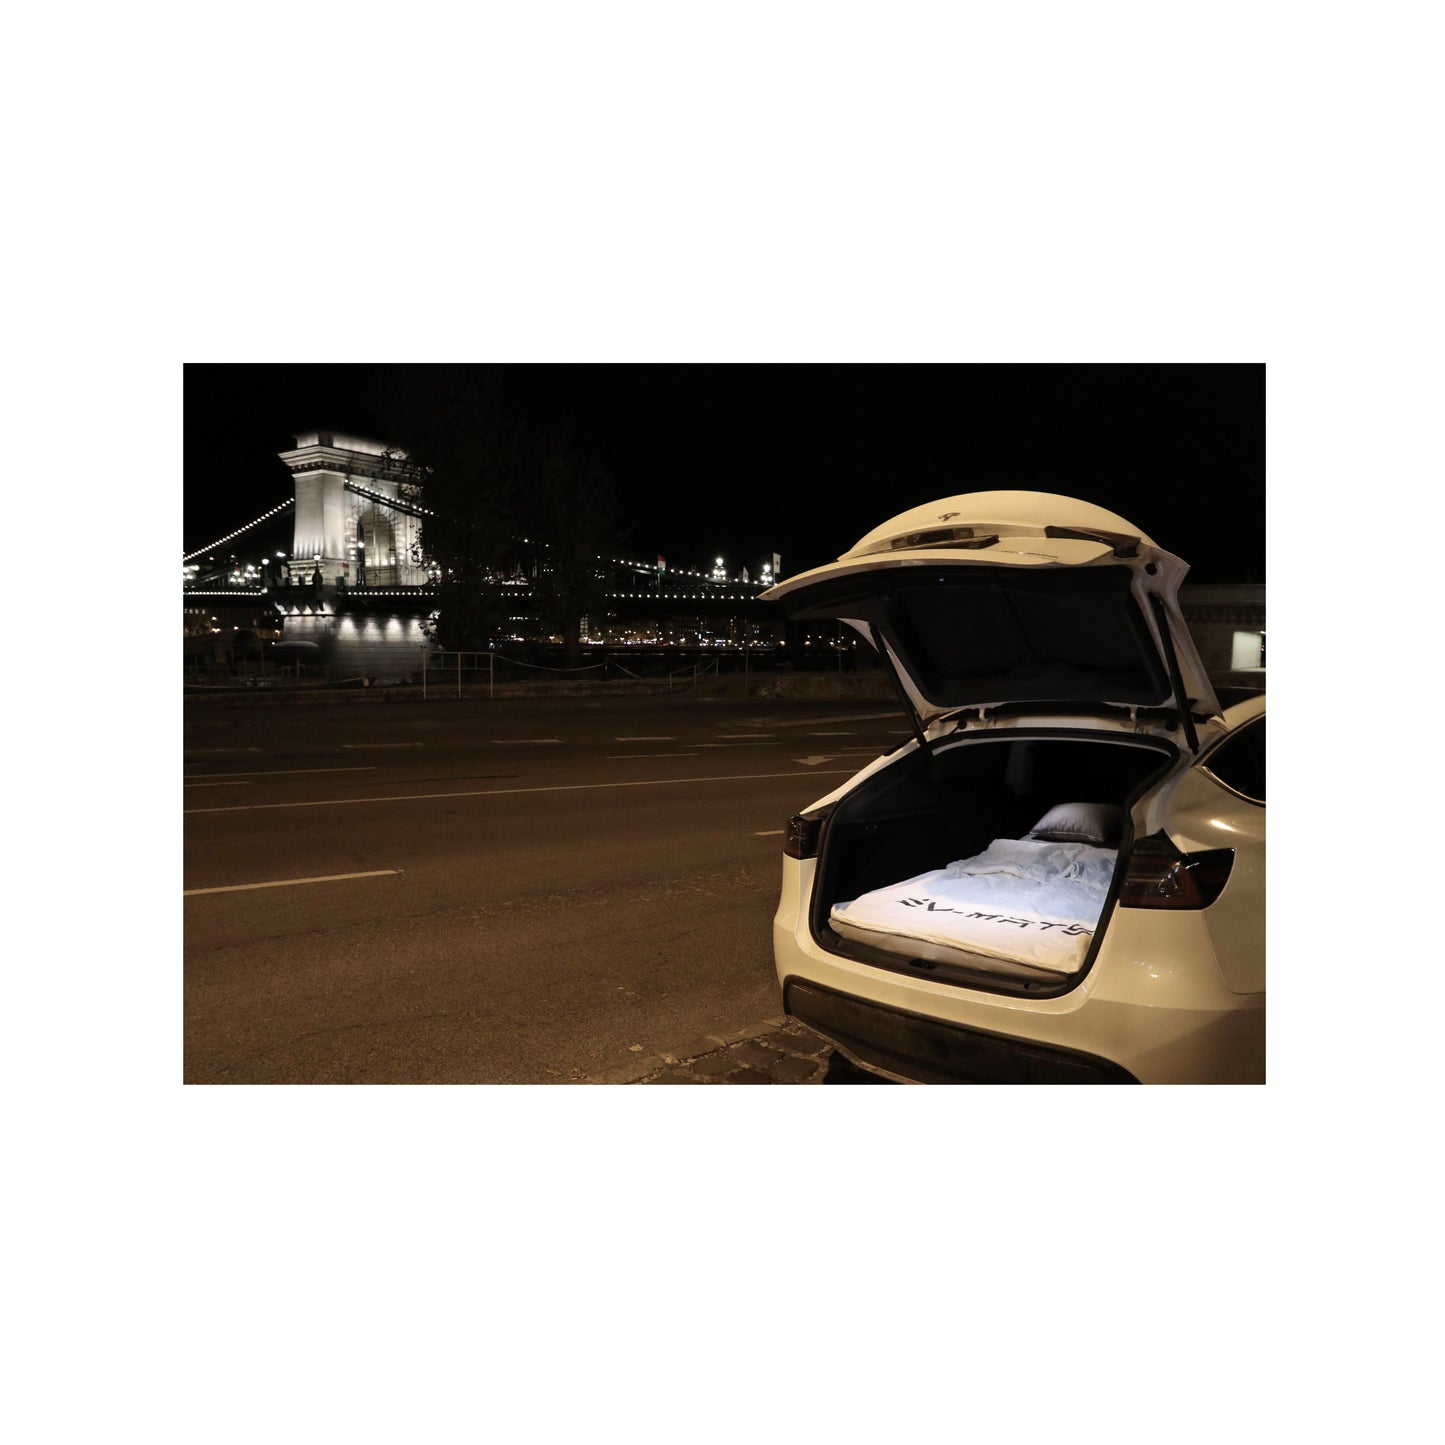 EXKLUSIVNÍ KEMPINGOVÁ SADA EV-MATS pro Tesla Model Y s matrací Tesla a voděodolnou taškou pro zadní kufr, saténovým prostěradlem, přikrývkou, 2 polštáři s potahy, 11 stínidly a 2 voděodolnými taškami pro přední kufr Modelu Y.